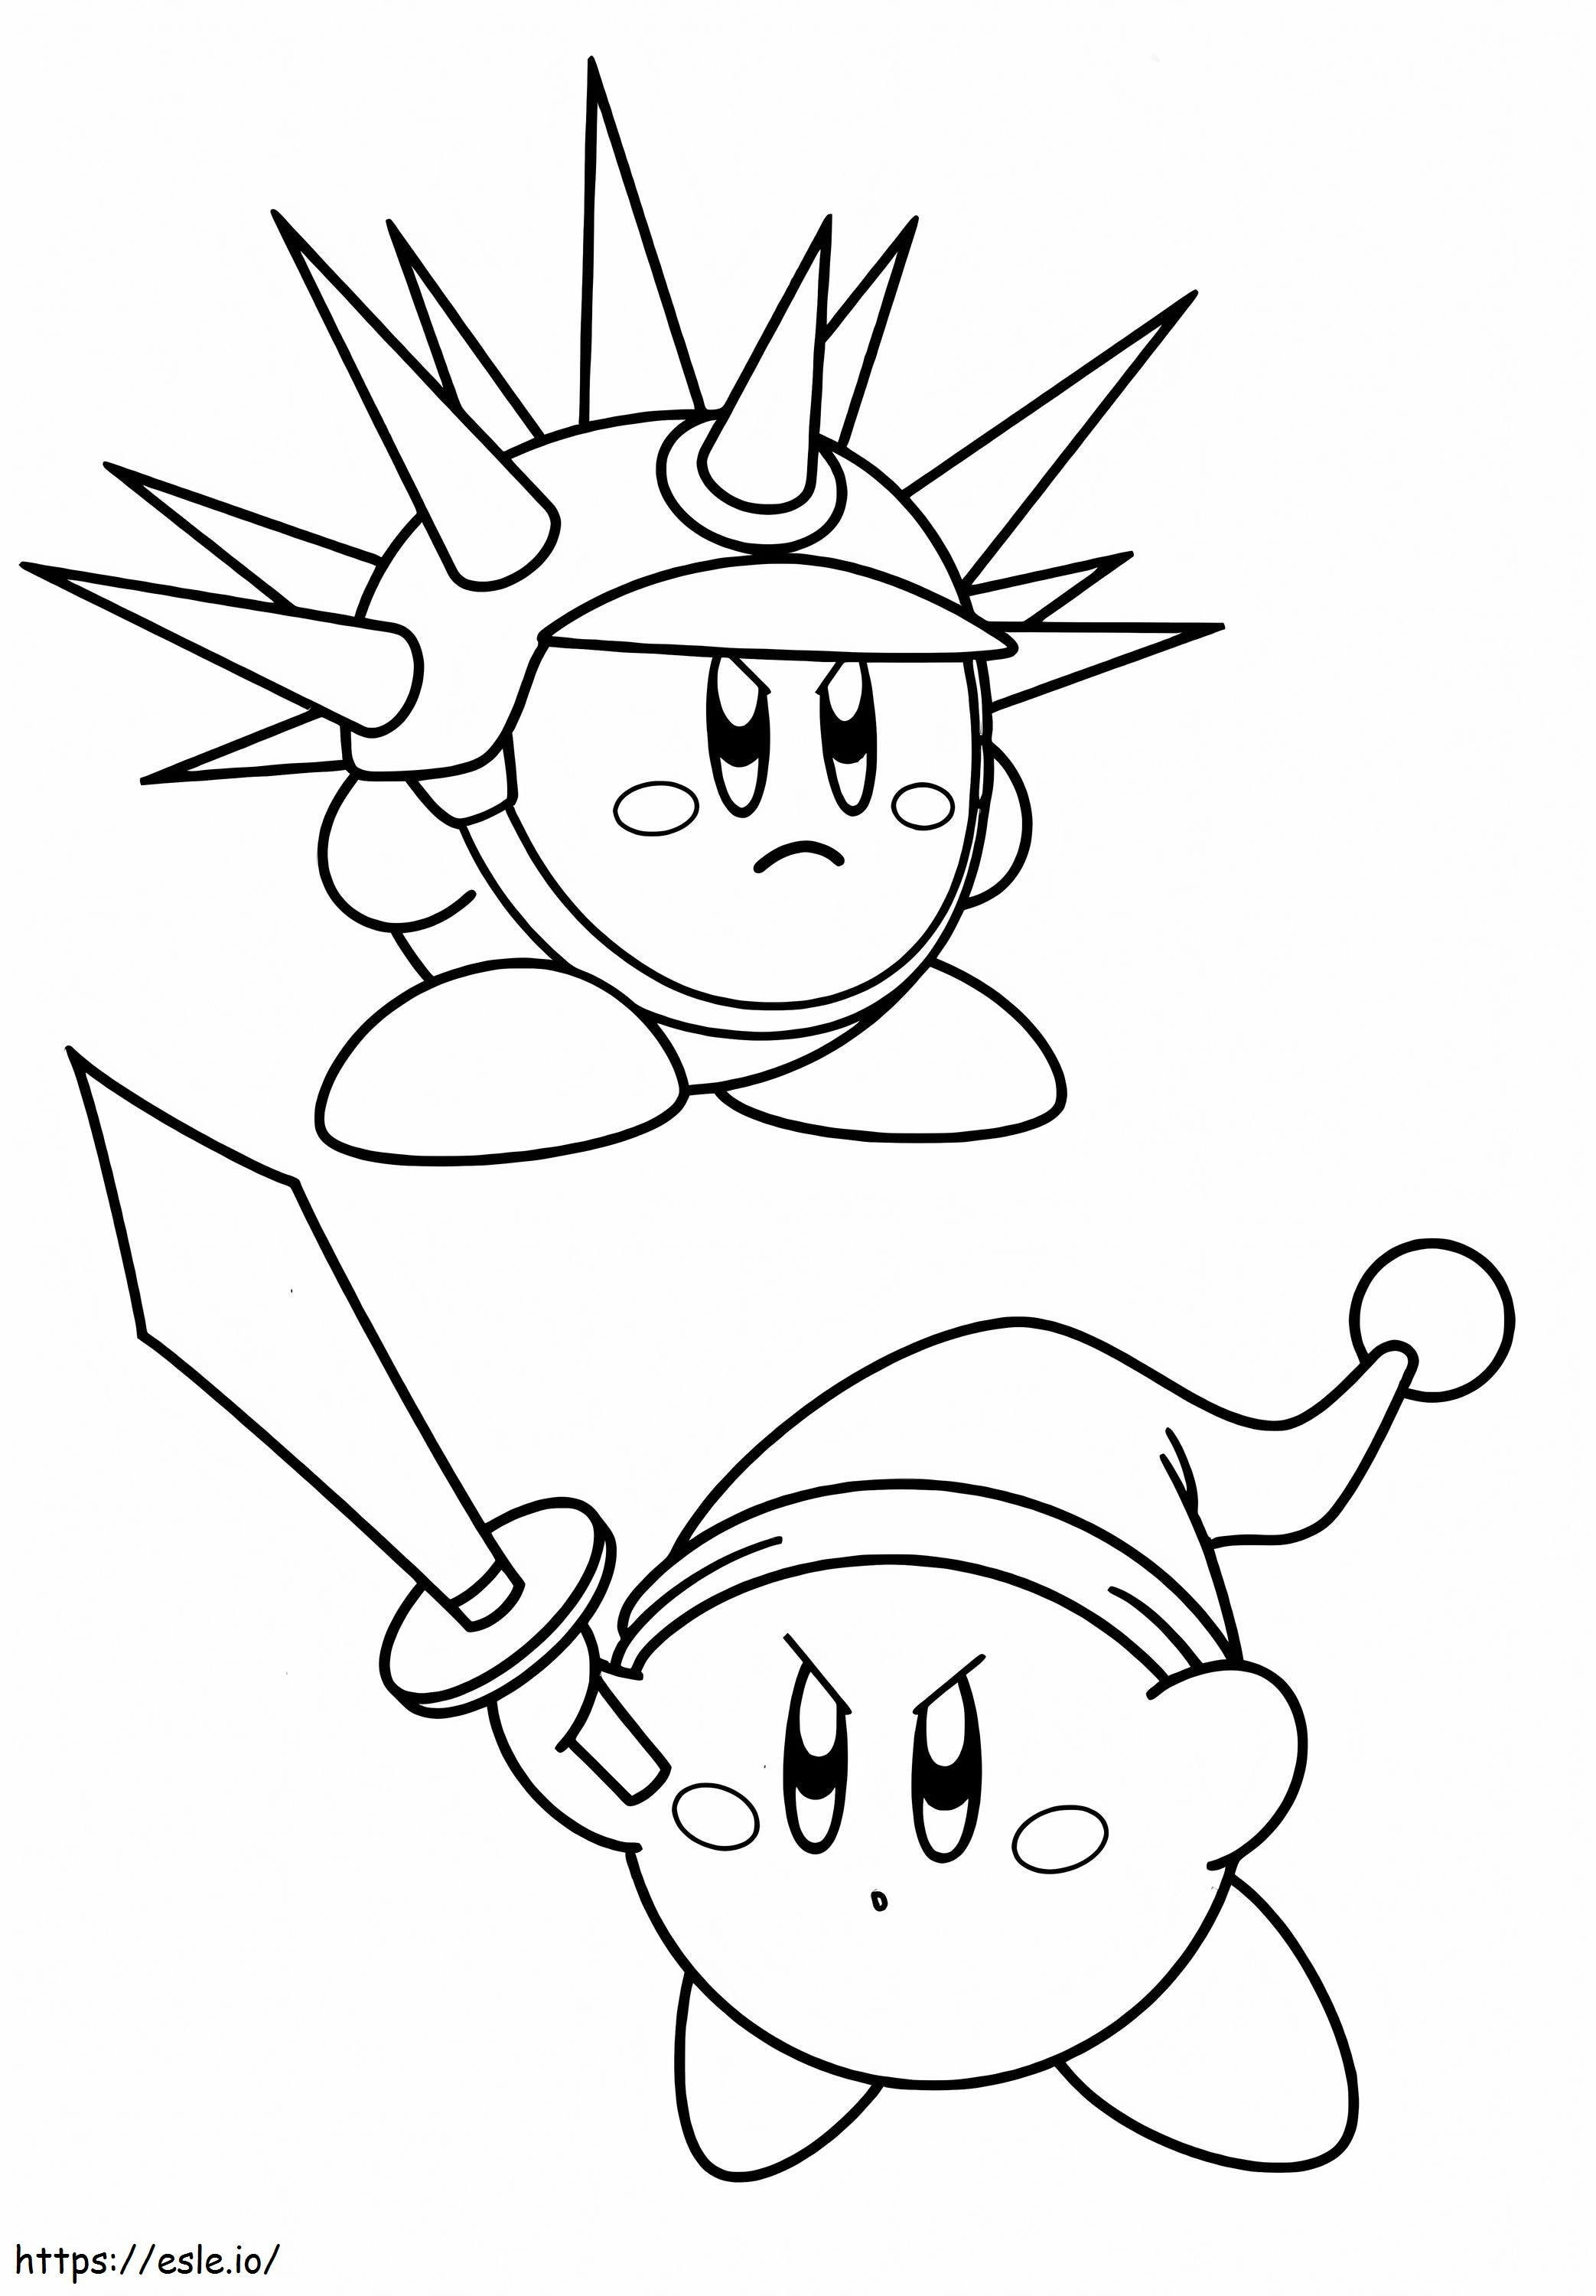 Cele două piei ale lui Kirby de colorat